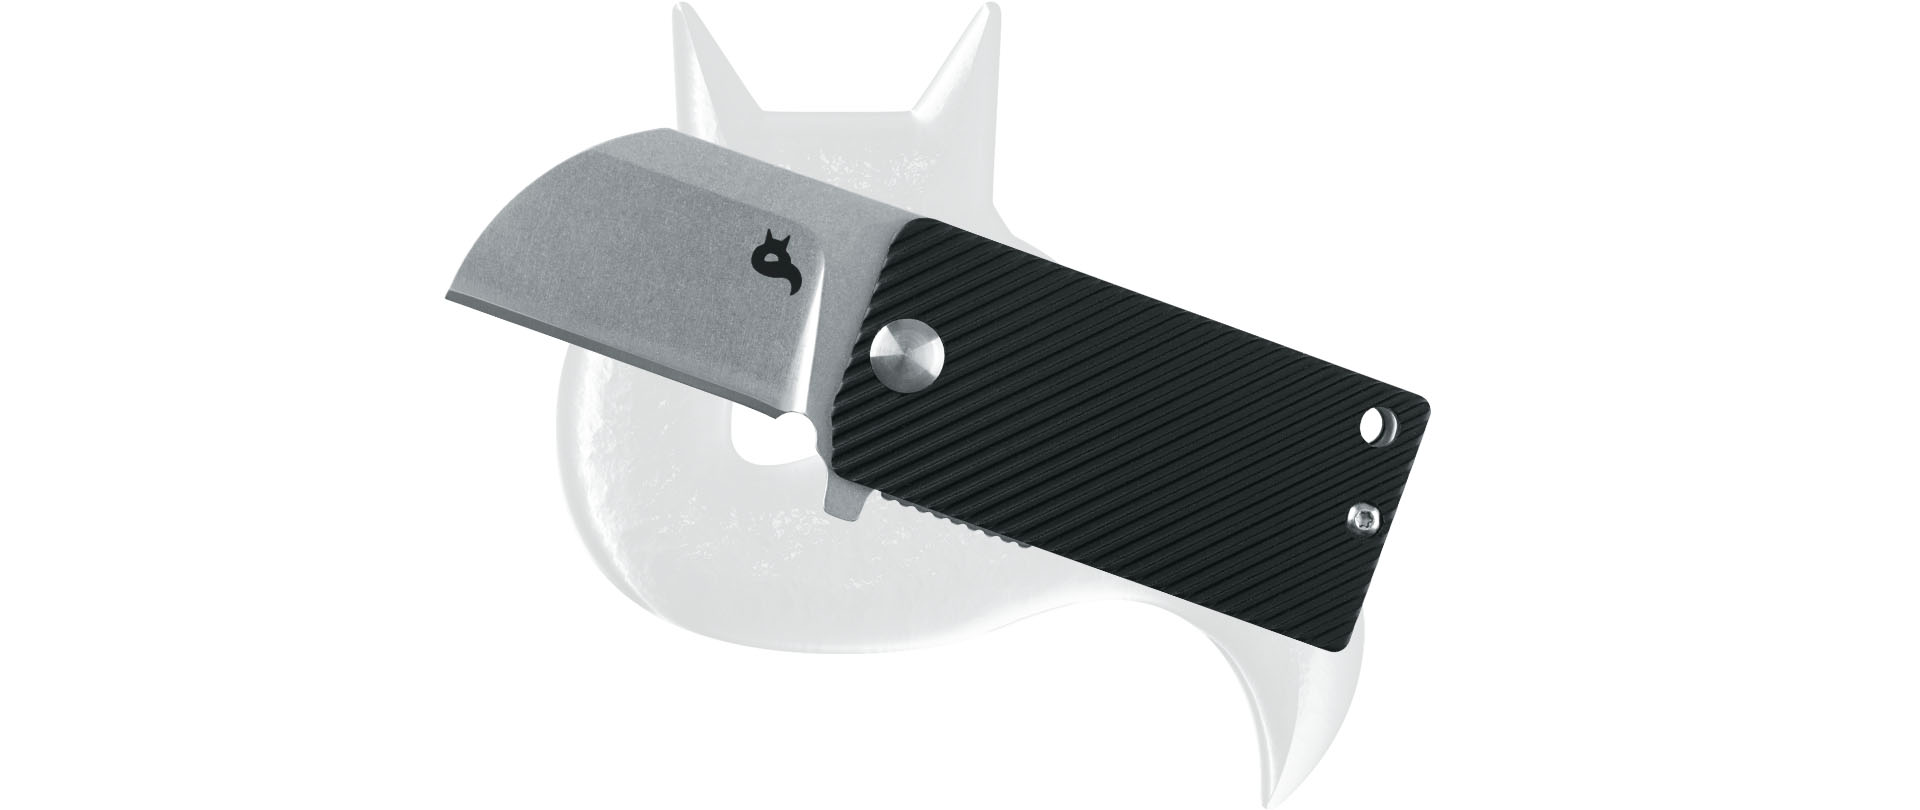 E-shop Fox knives B.KEY BF-750